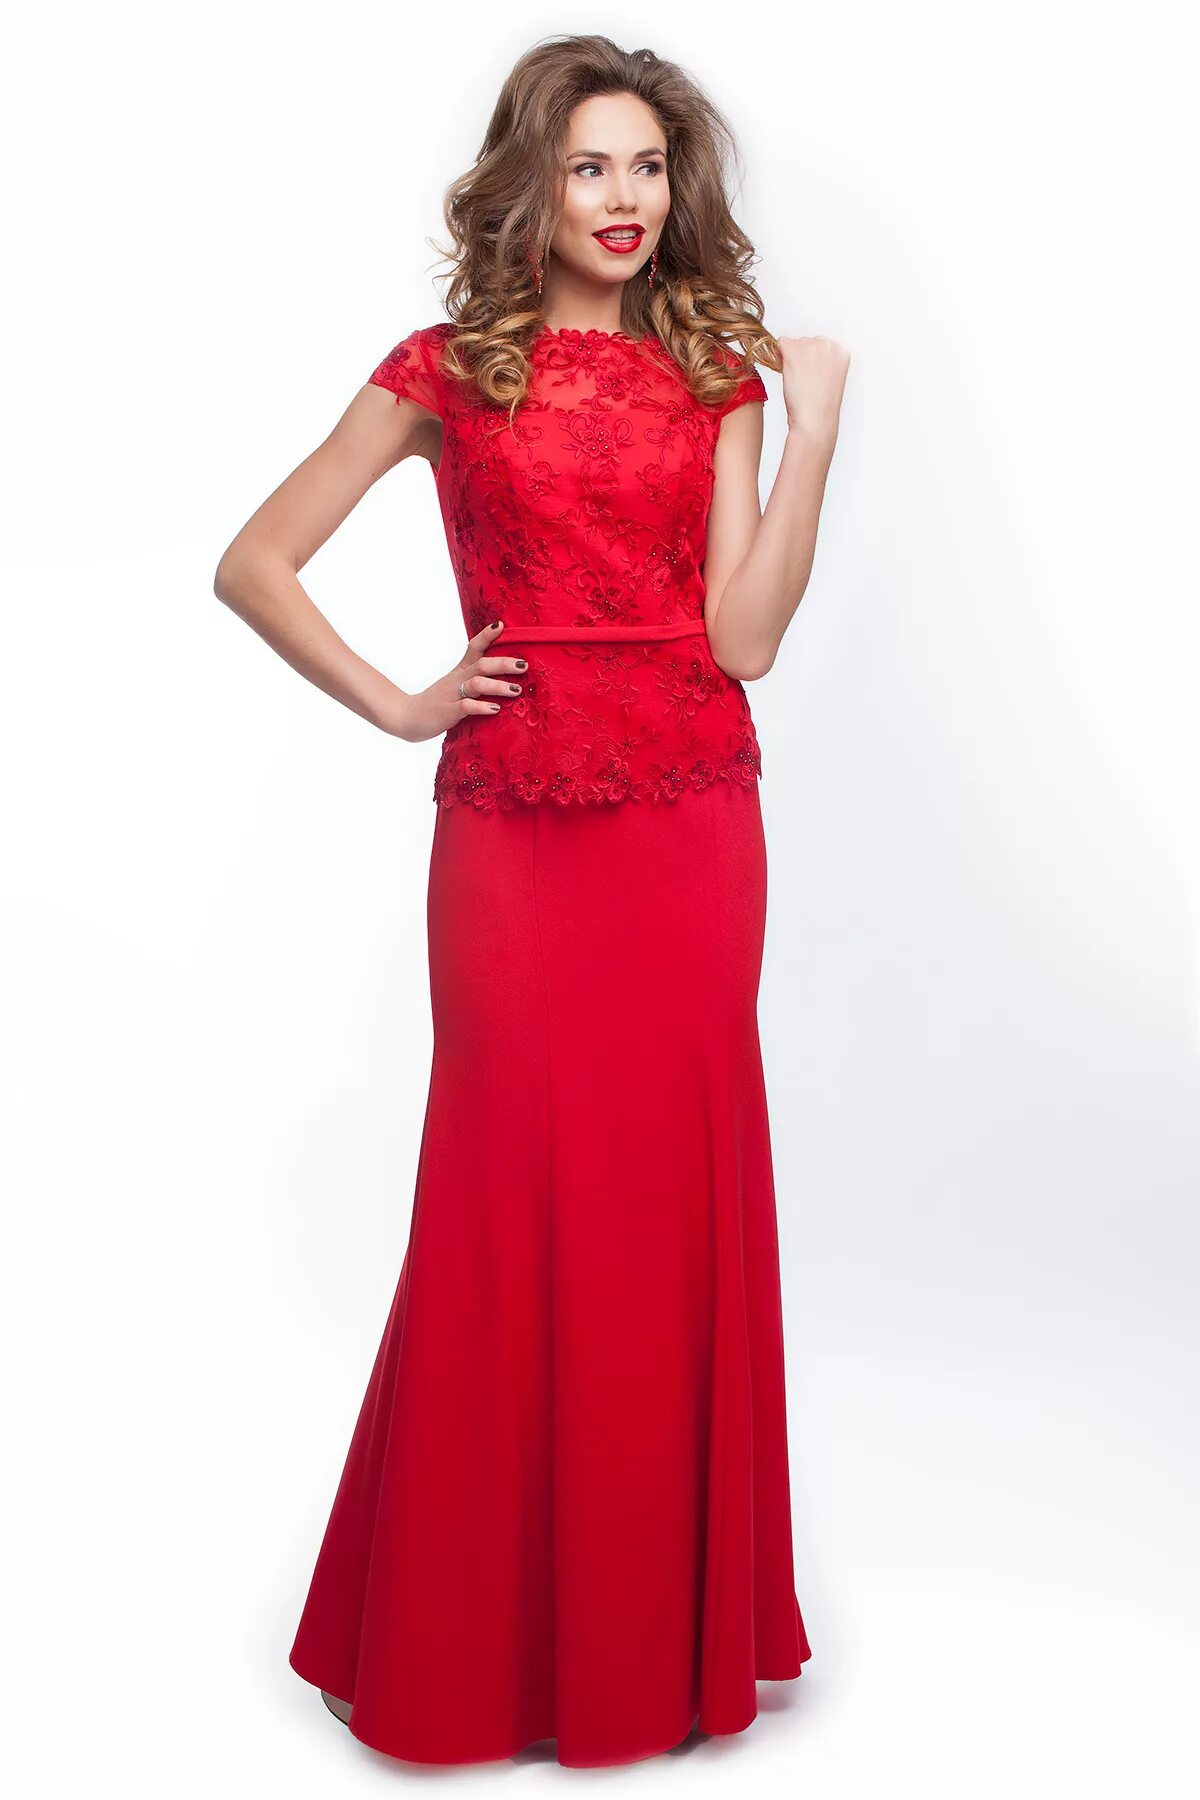 Где можно купить недорогое платье. Вечернее платье. Красное платье. Красивое красное платье. Красивые вечерние платья.